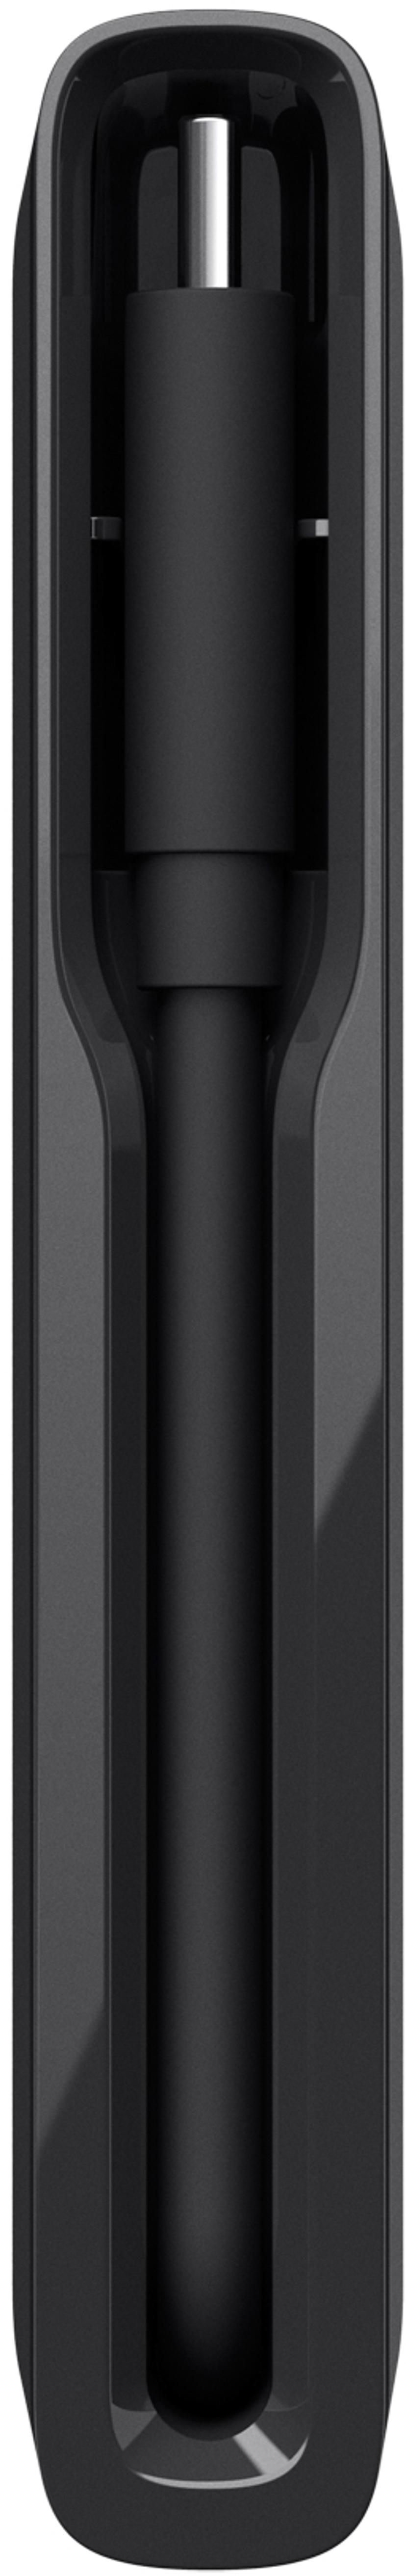 Belkin 4-Port USB-C Hub USB Hubb